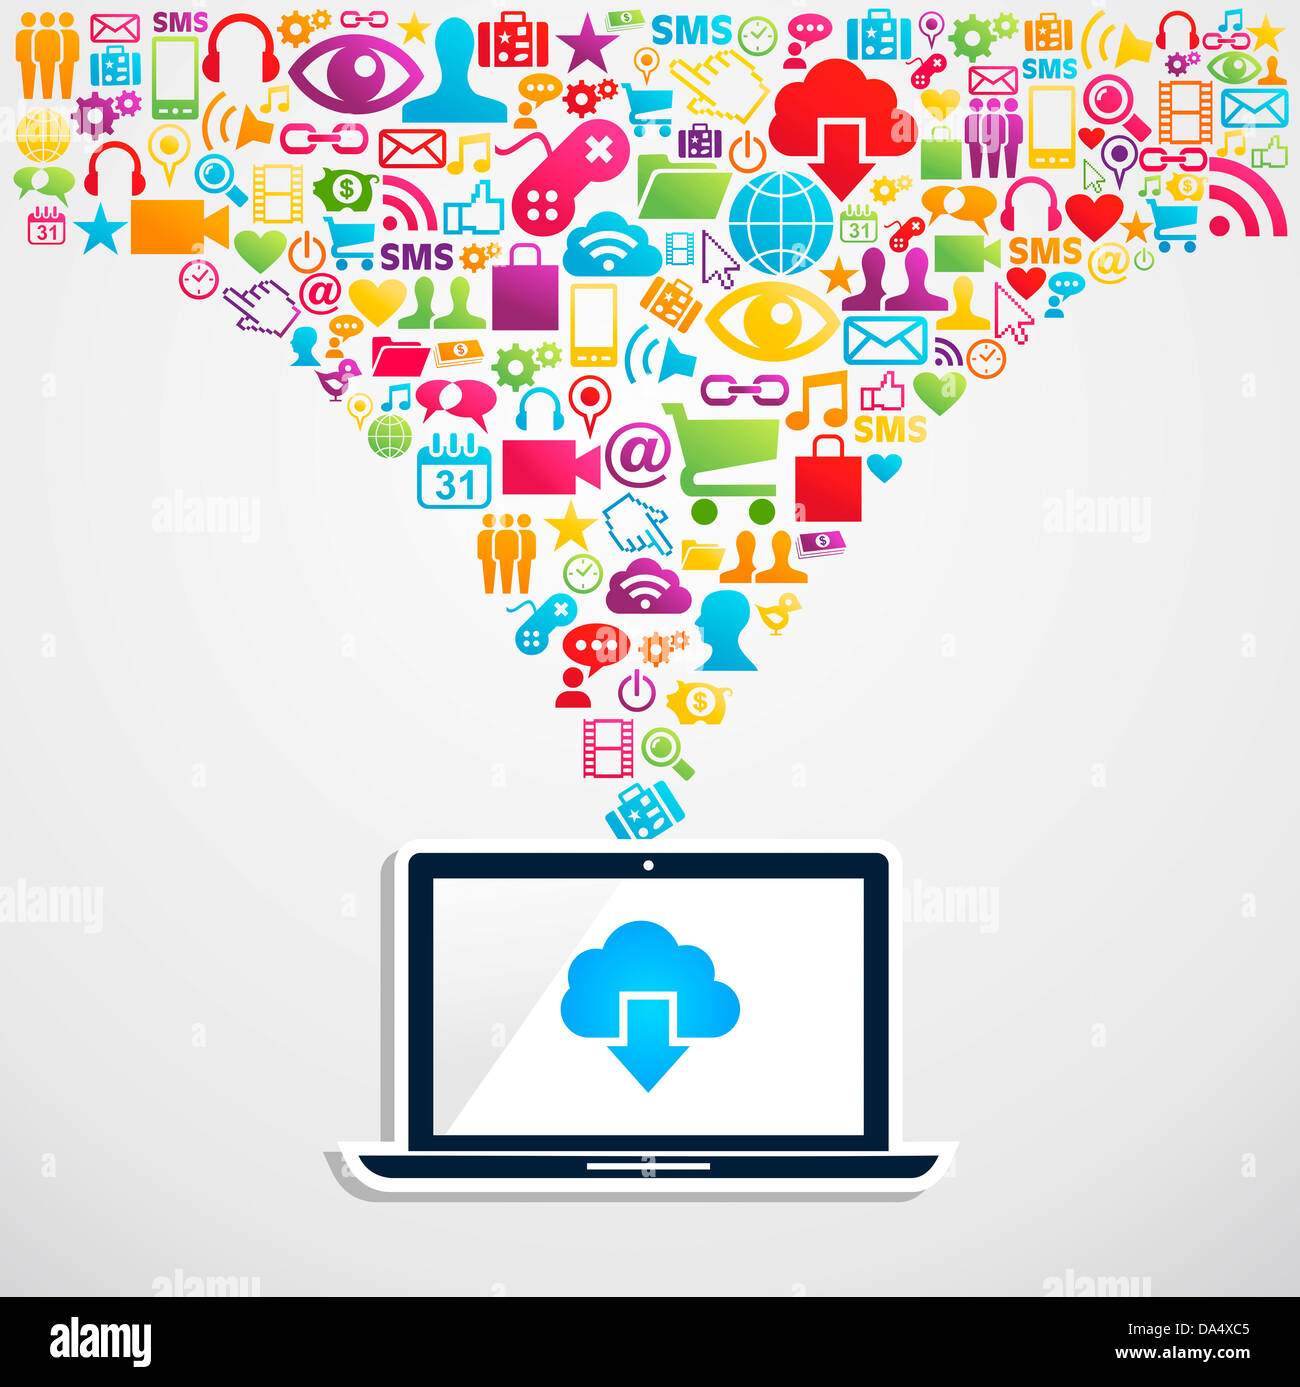 L'icône du réseau social media diversité splash avec ordinateur portable de cloud computing. Couches d'illustration vectorielle pour une manipulation facile et coloris. Banque D'Images